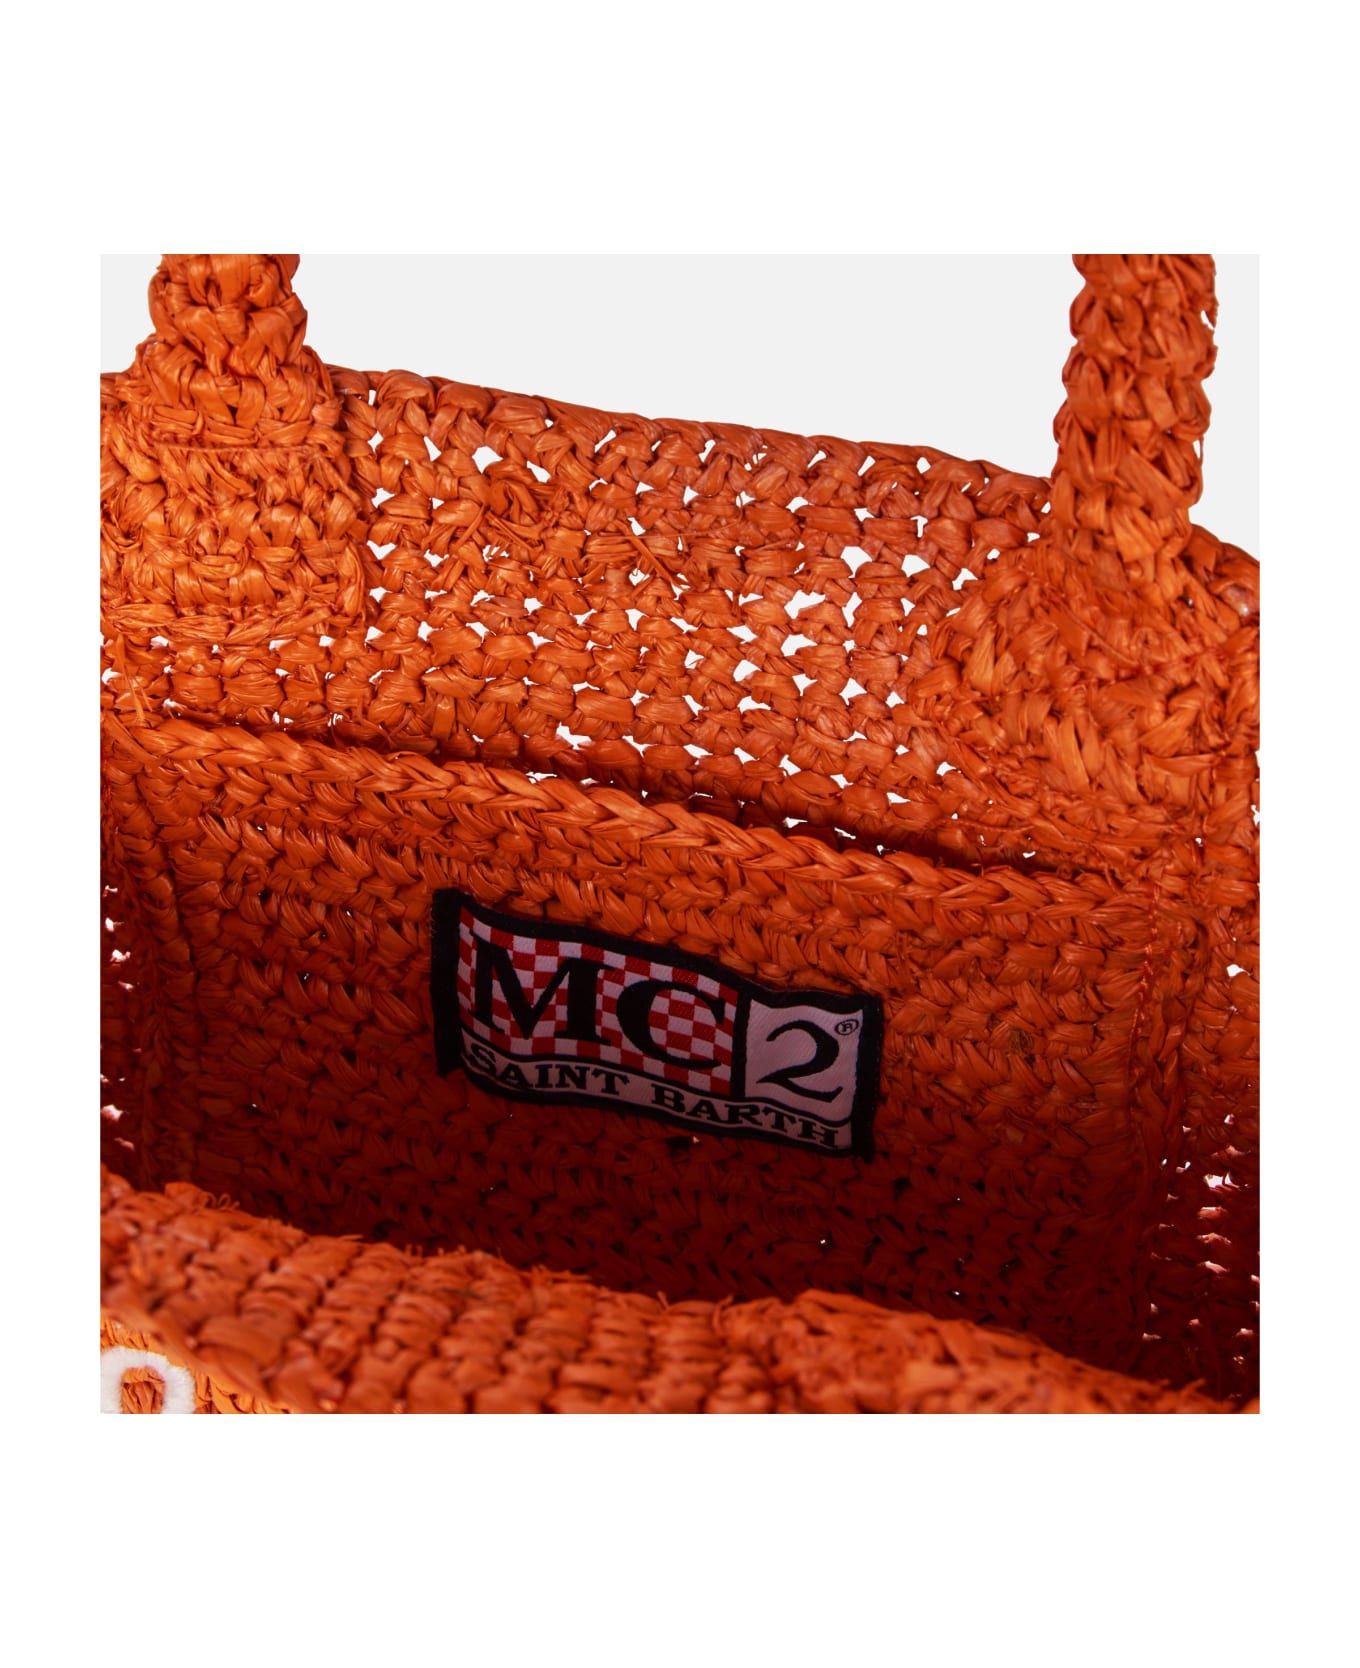 MC2 Saint Barth Mini Vanity Orange Raffia Bag With Front Embroidery - ORANGE